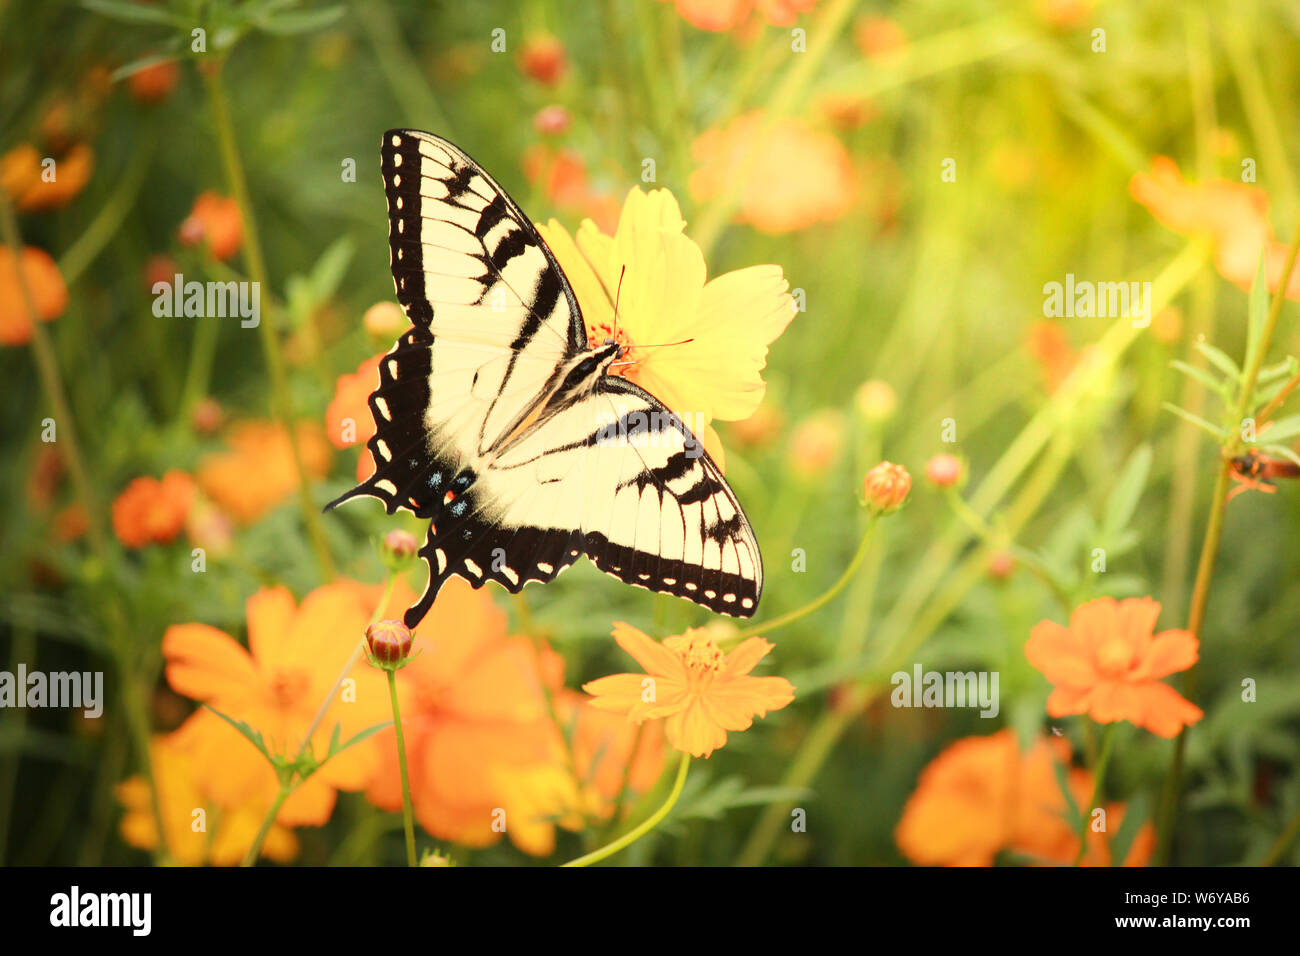 Gran especie de mariposas Papilionidae (mariposa) tomando el sol en una cabeza floral mostrando sus hermosas alas pelado Foto de stock